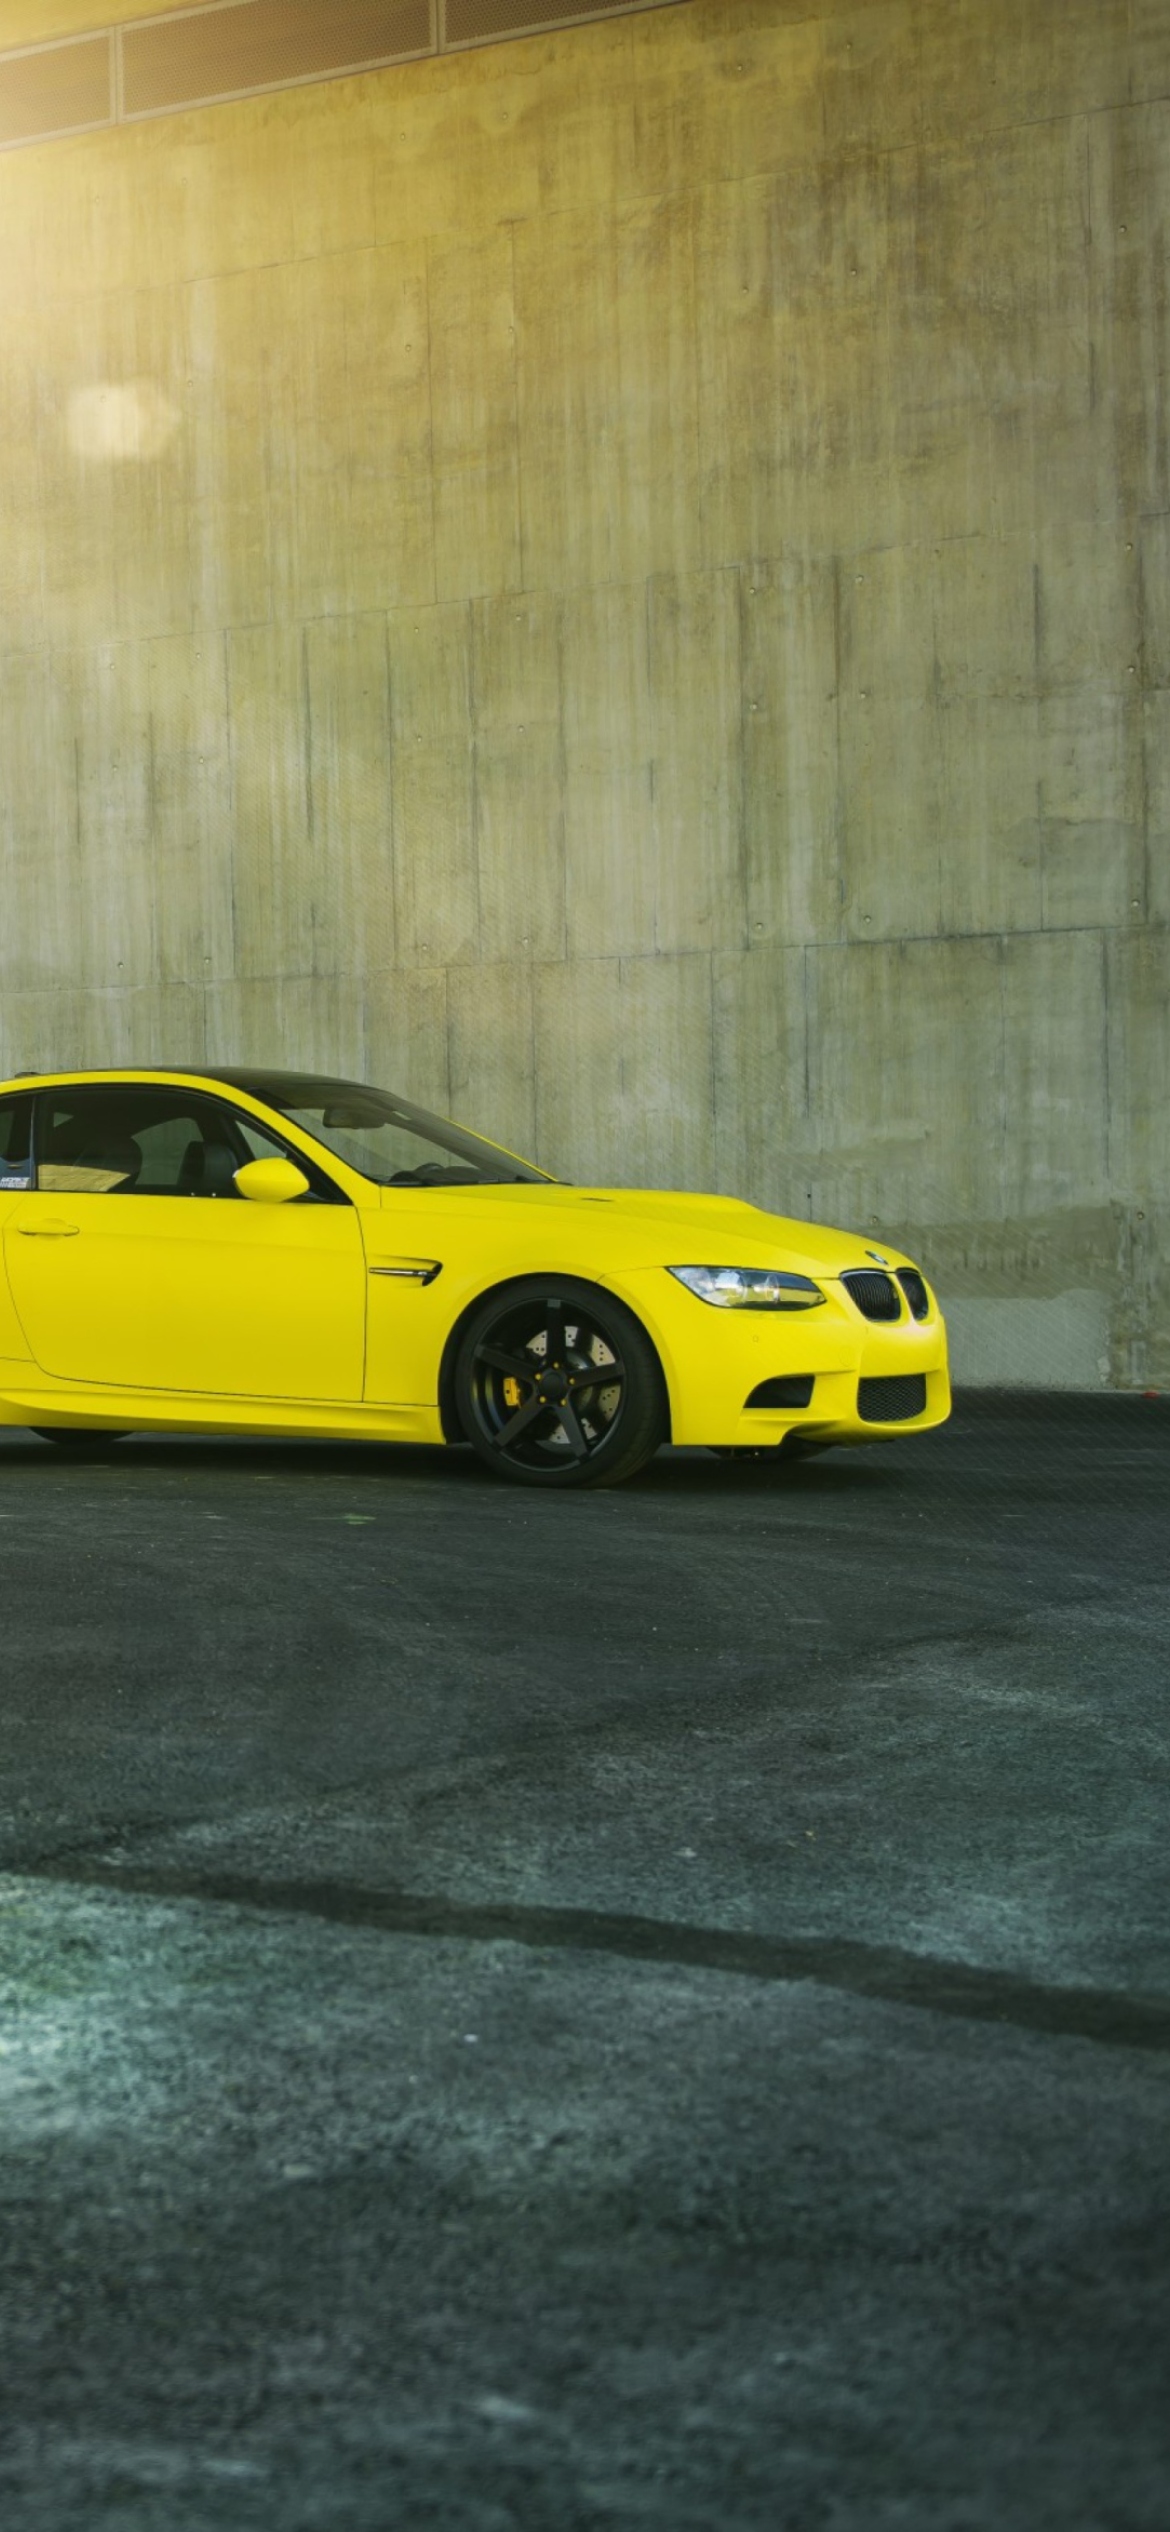 Das Yellow BMW Wallpaper 1170x2532